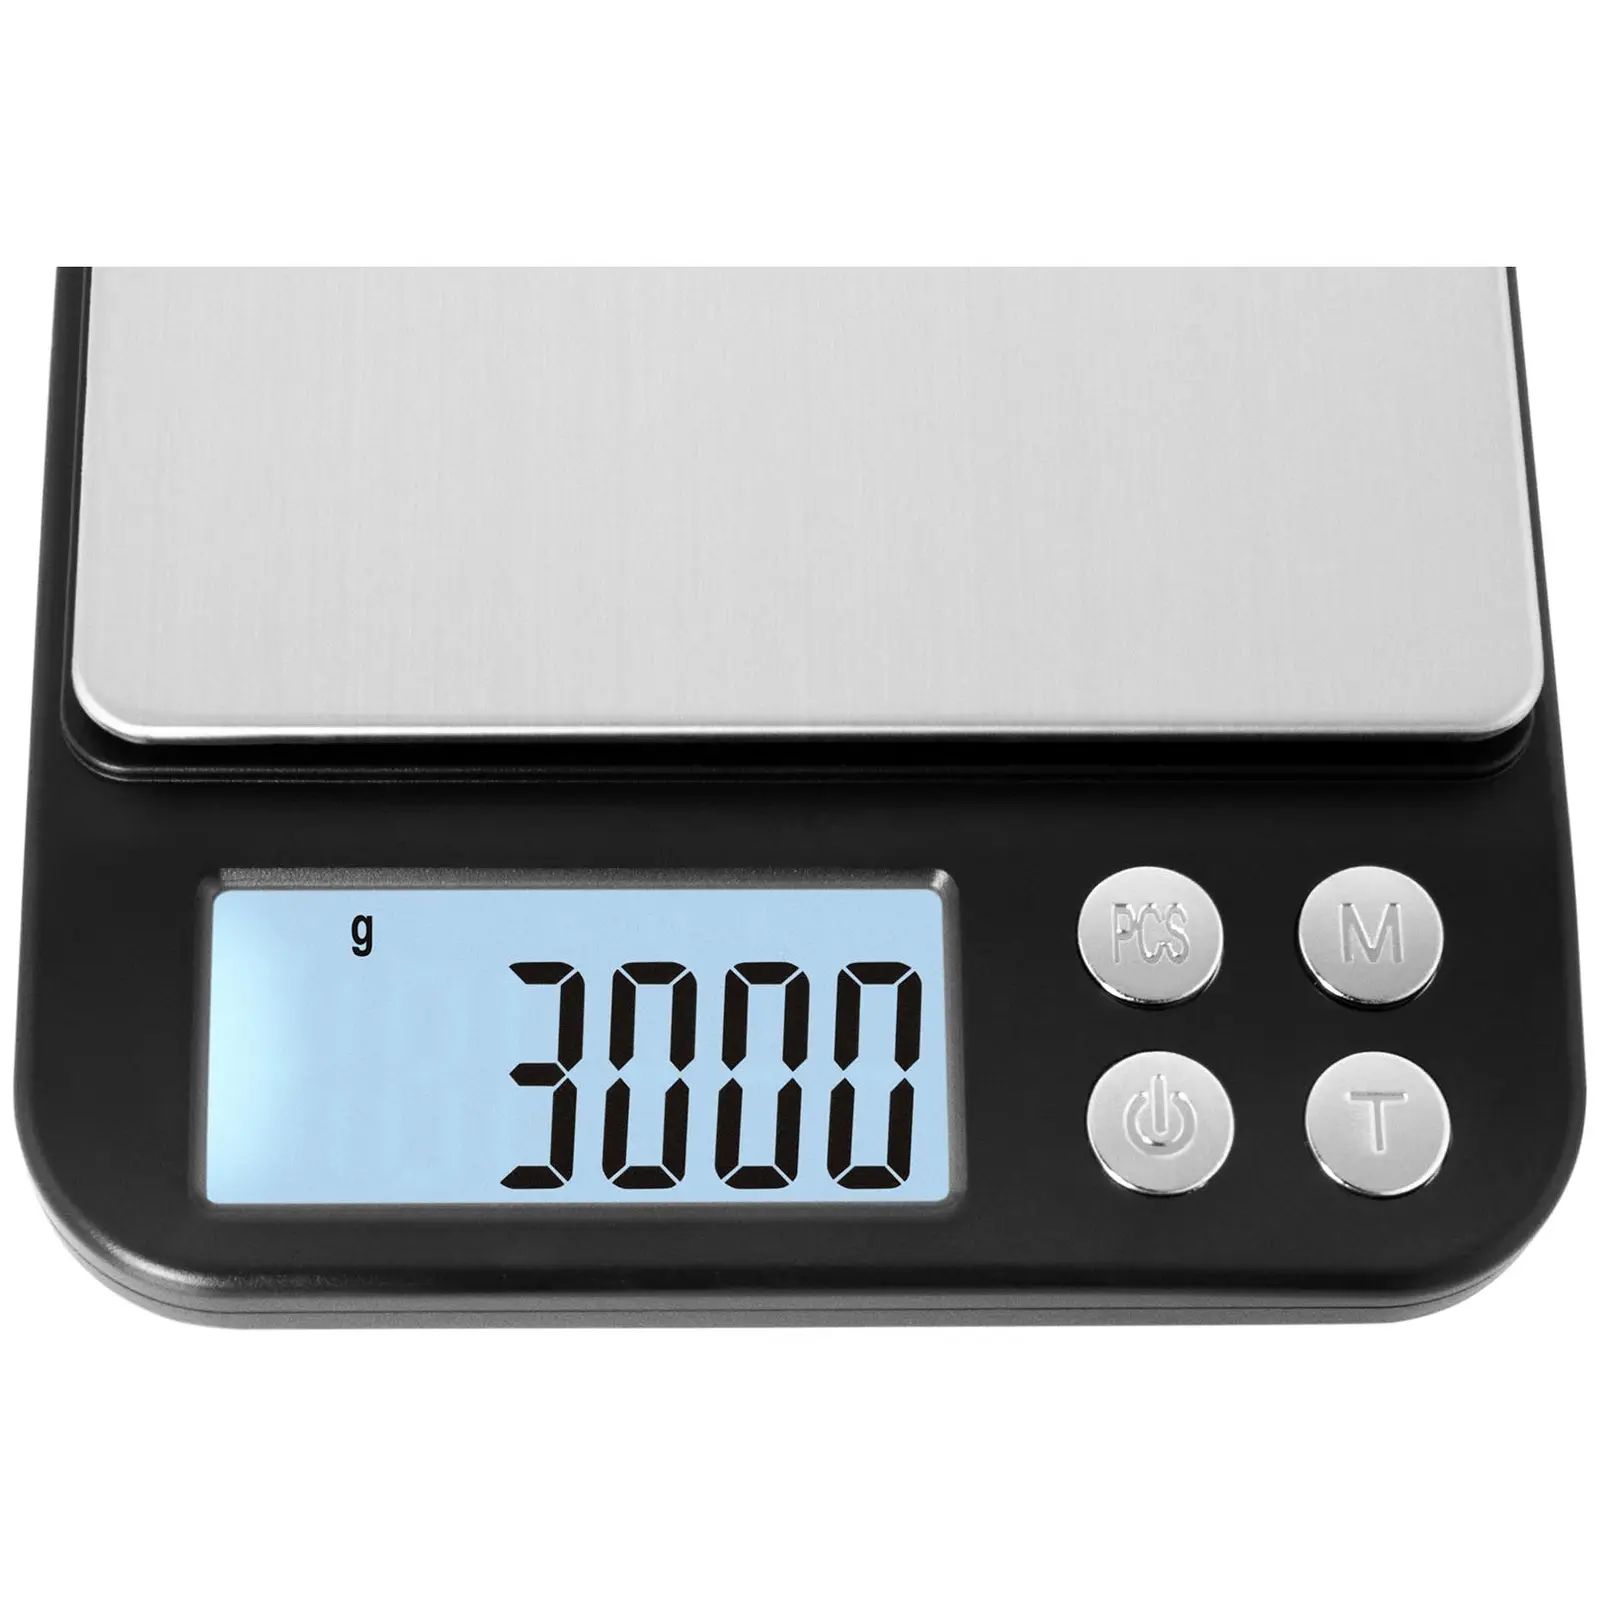 Digital bordvekt – 3 kg / 0,1 g